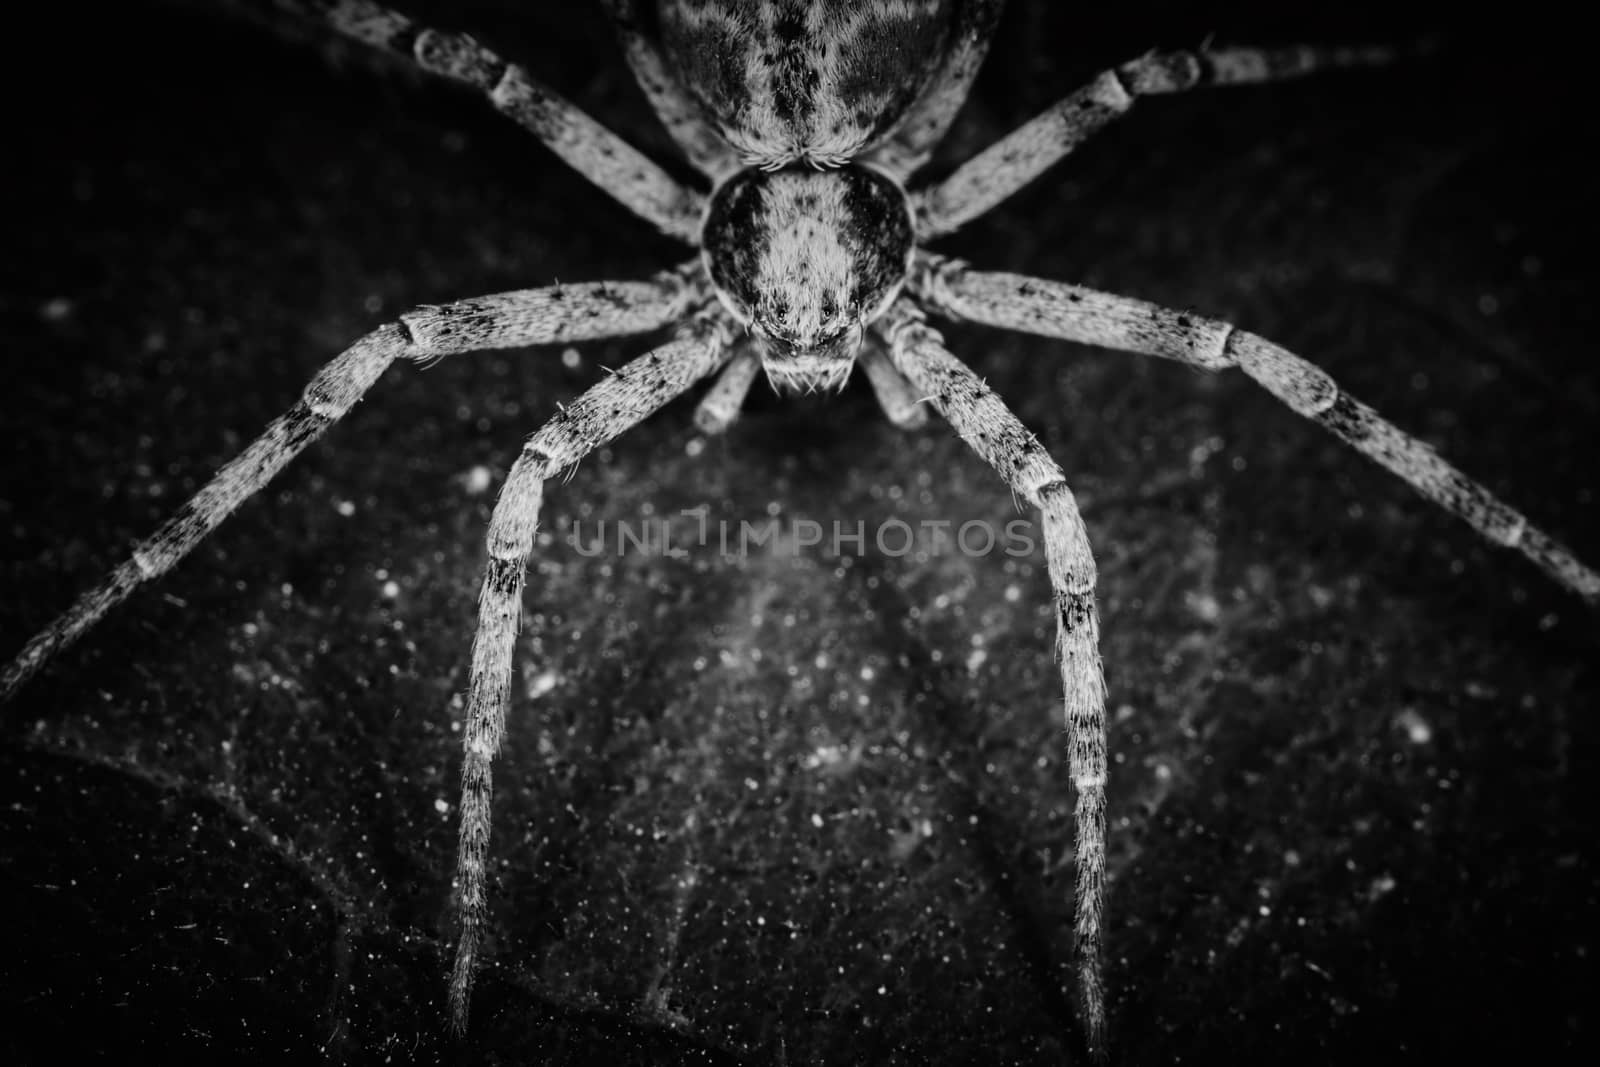 Philodromidae spider horror style extreme macro photo by rasika108